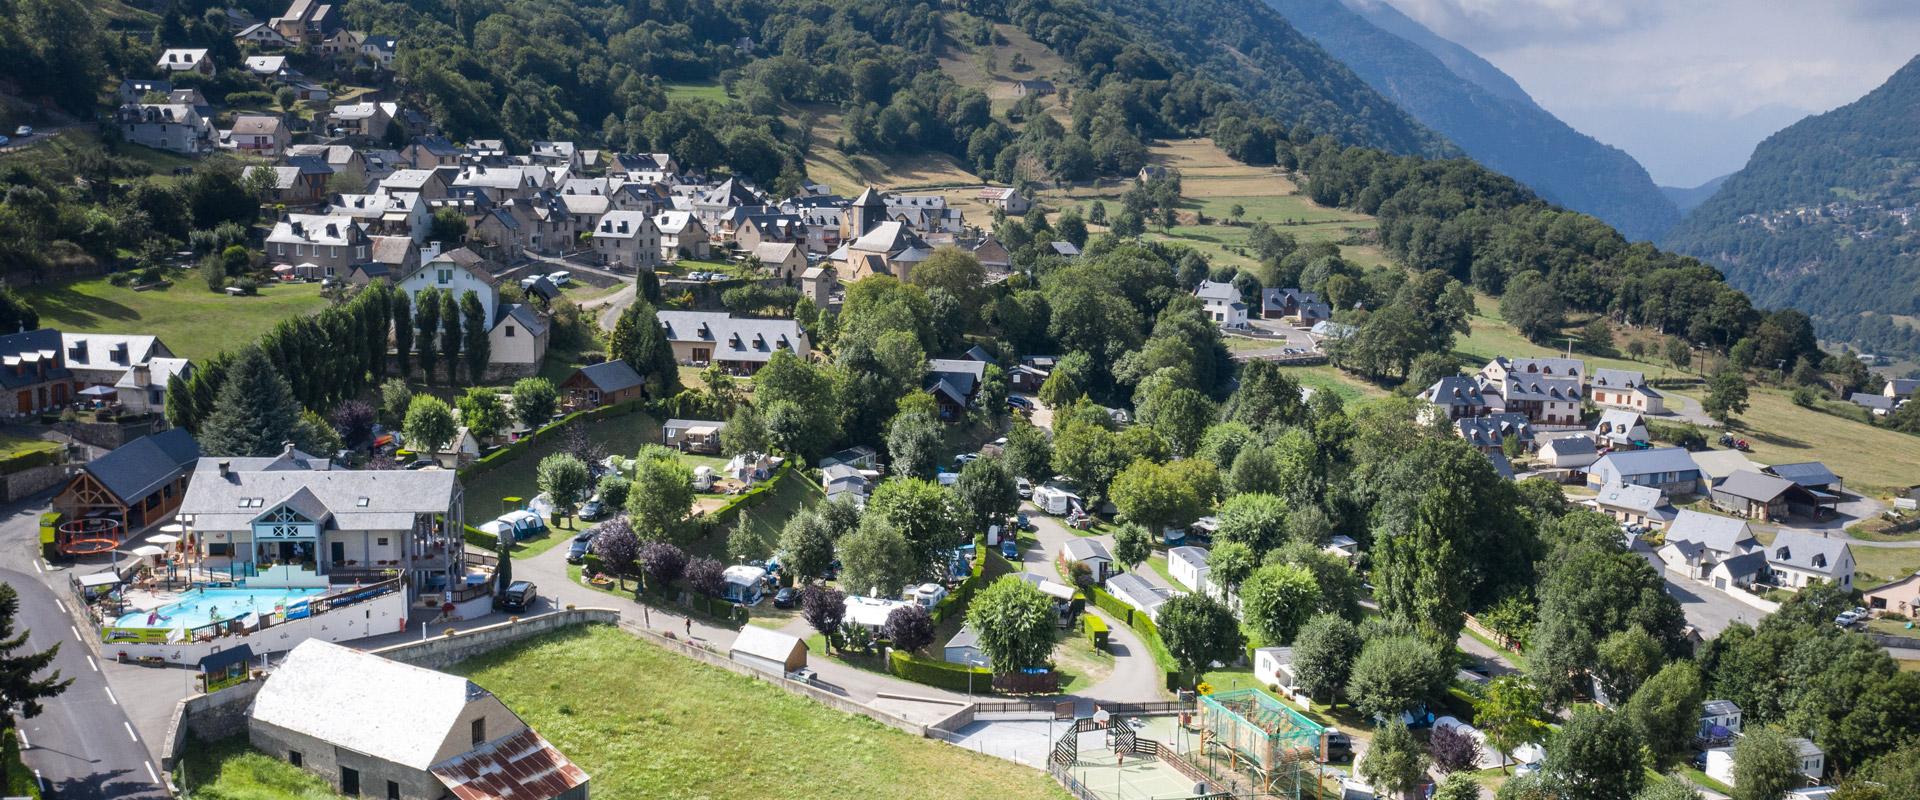 Camping des Hautes Pyrénées 4 étoiles à Luz Saint Sauveur